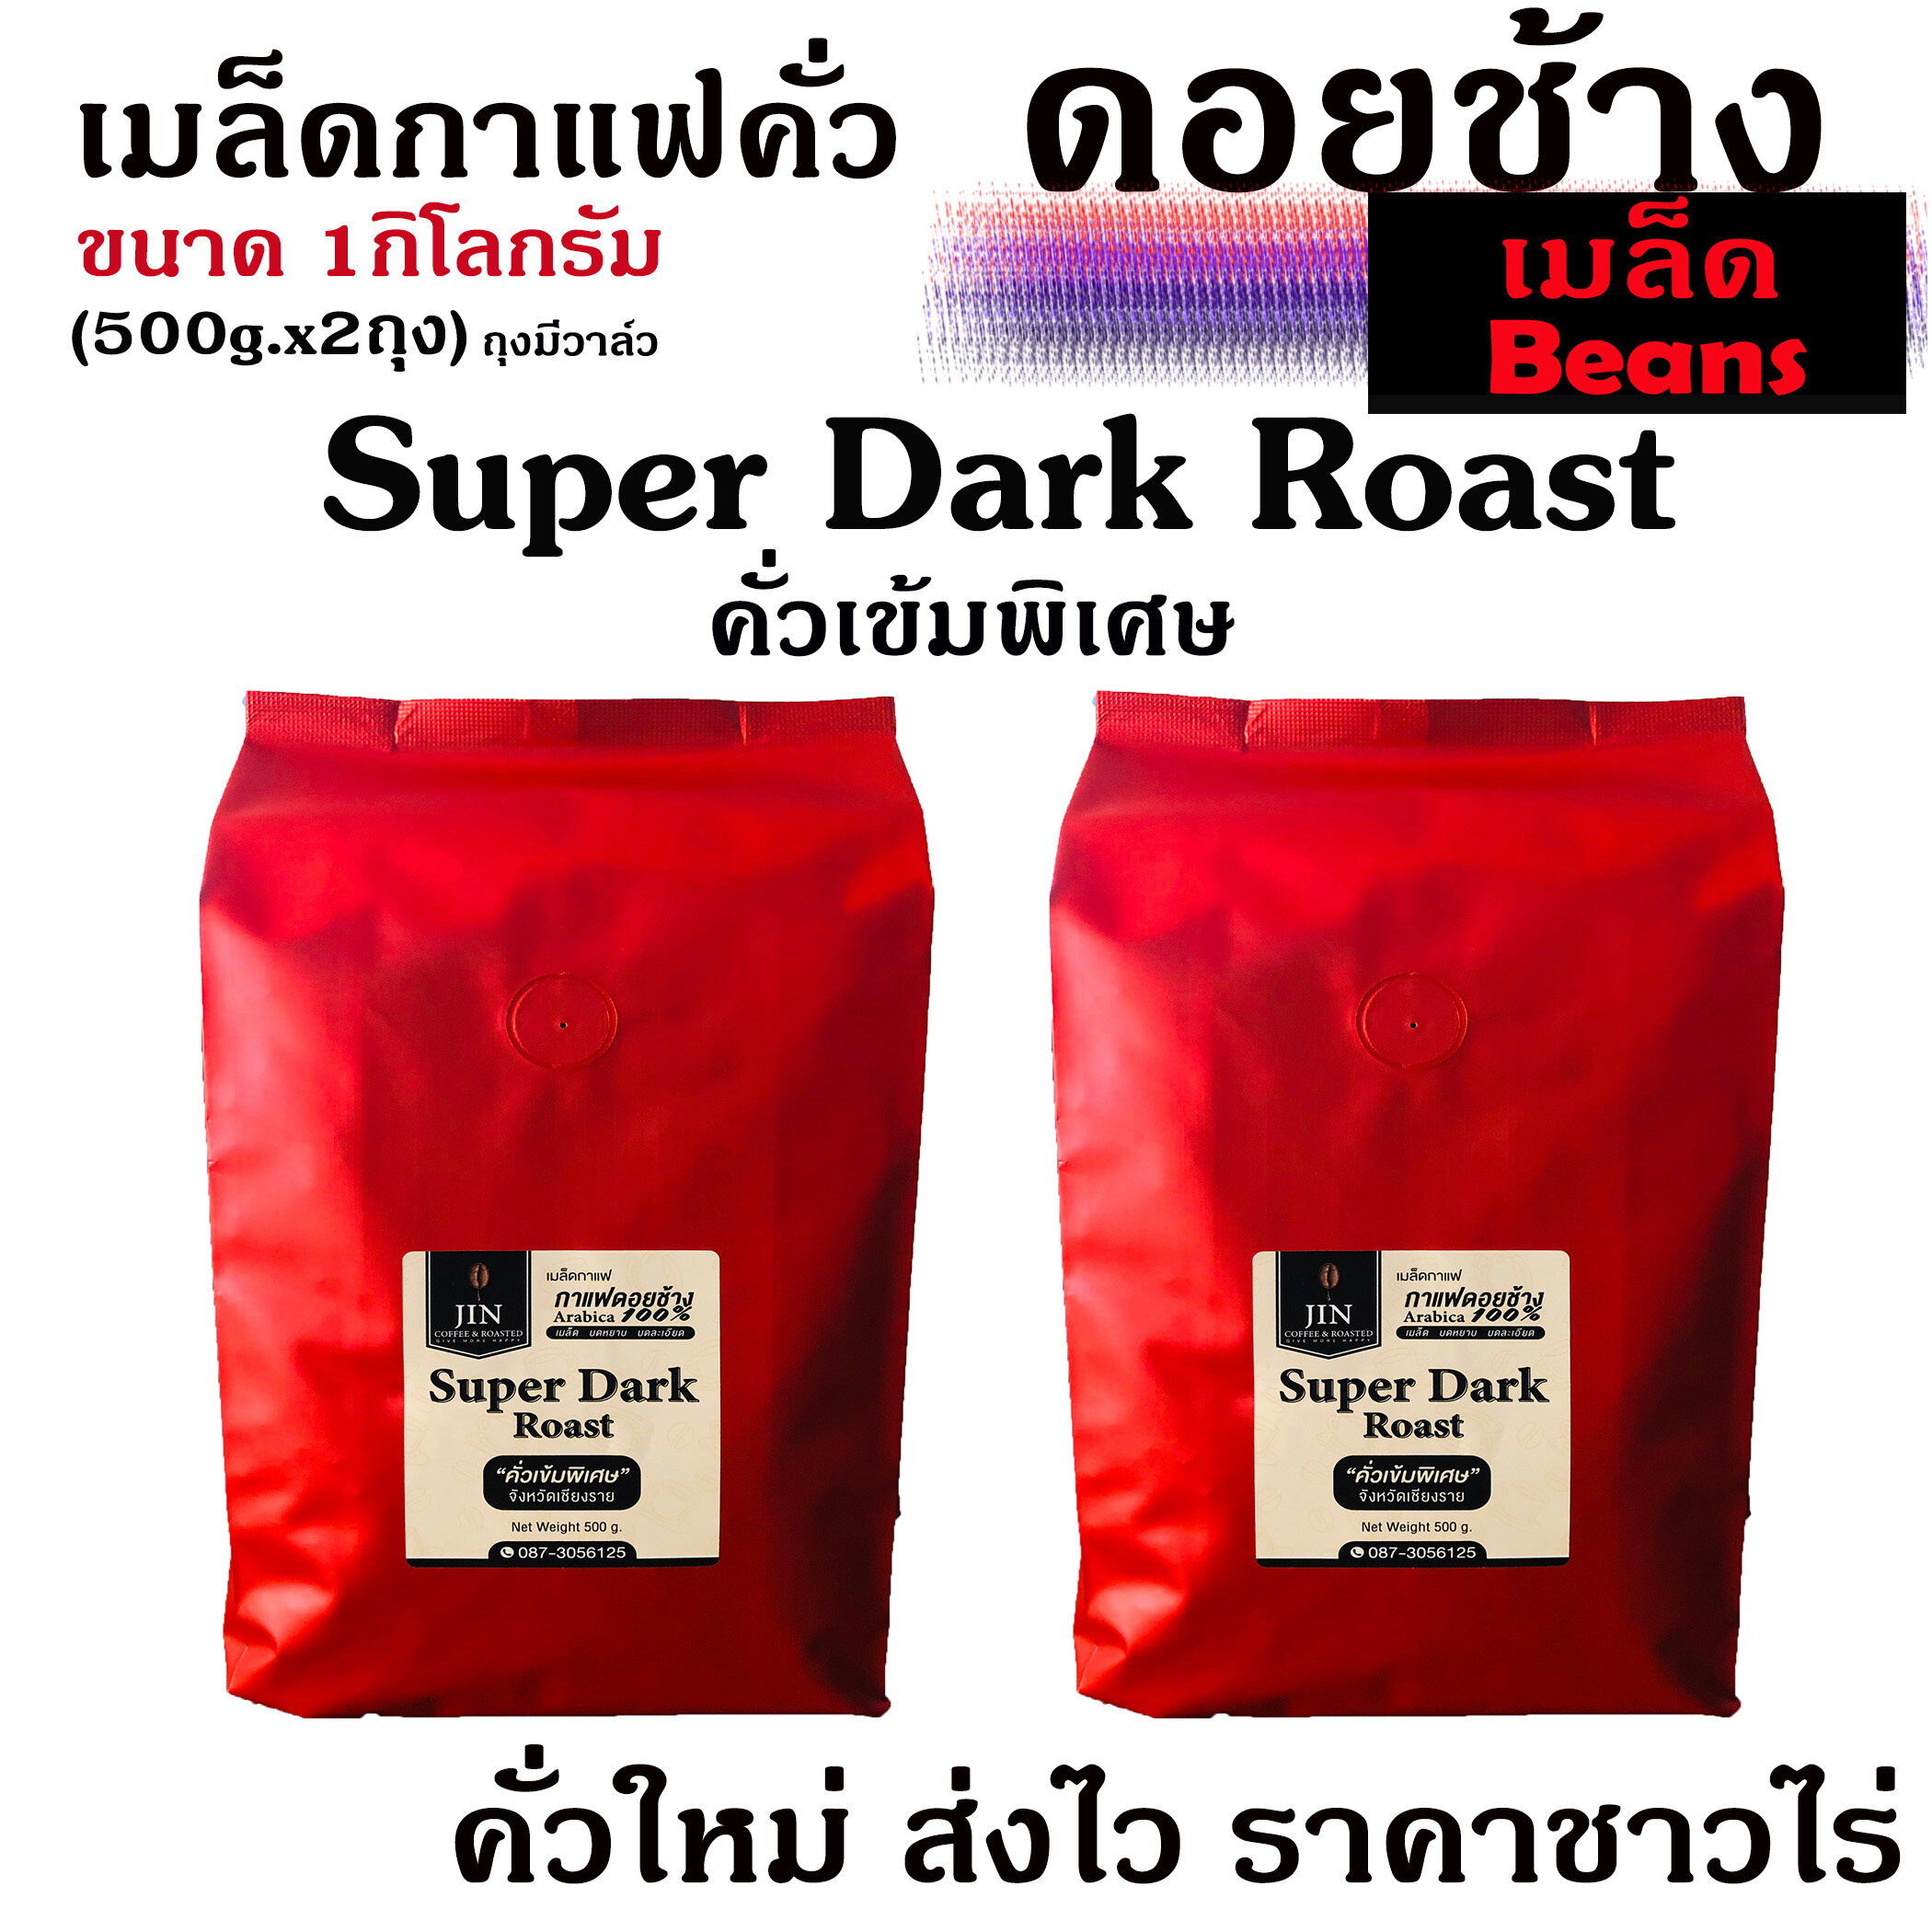 (คั่วเมล็ด) กาแฟคั่วเข้มพิเศษ Super Dark Roast ขนาด 500g. x2ถุง จากดอยช้าง คั่วใหม่ทุกวัน ส่งฟรีทุกครั้ง